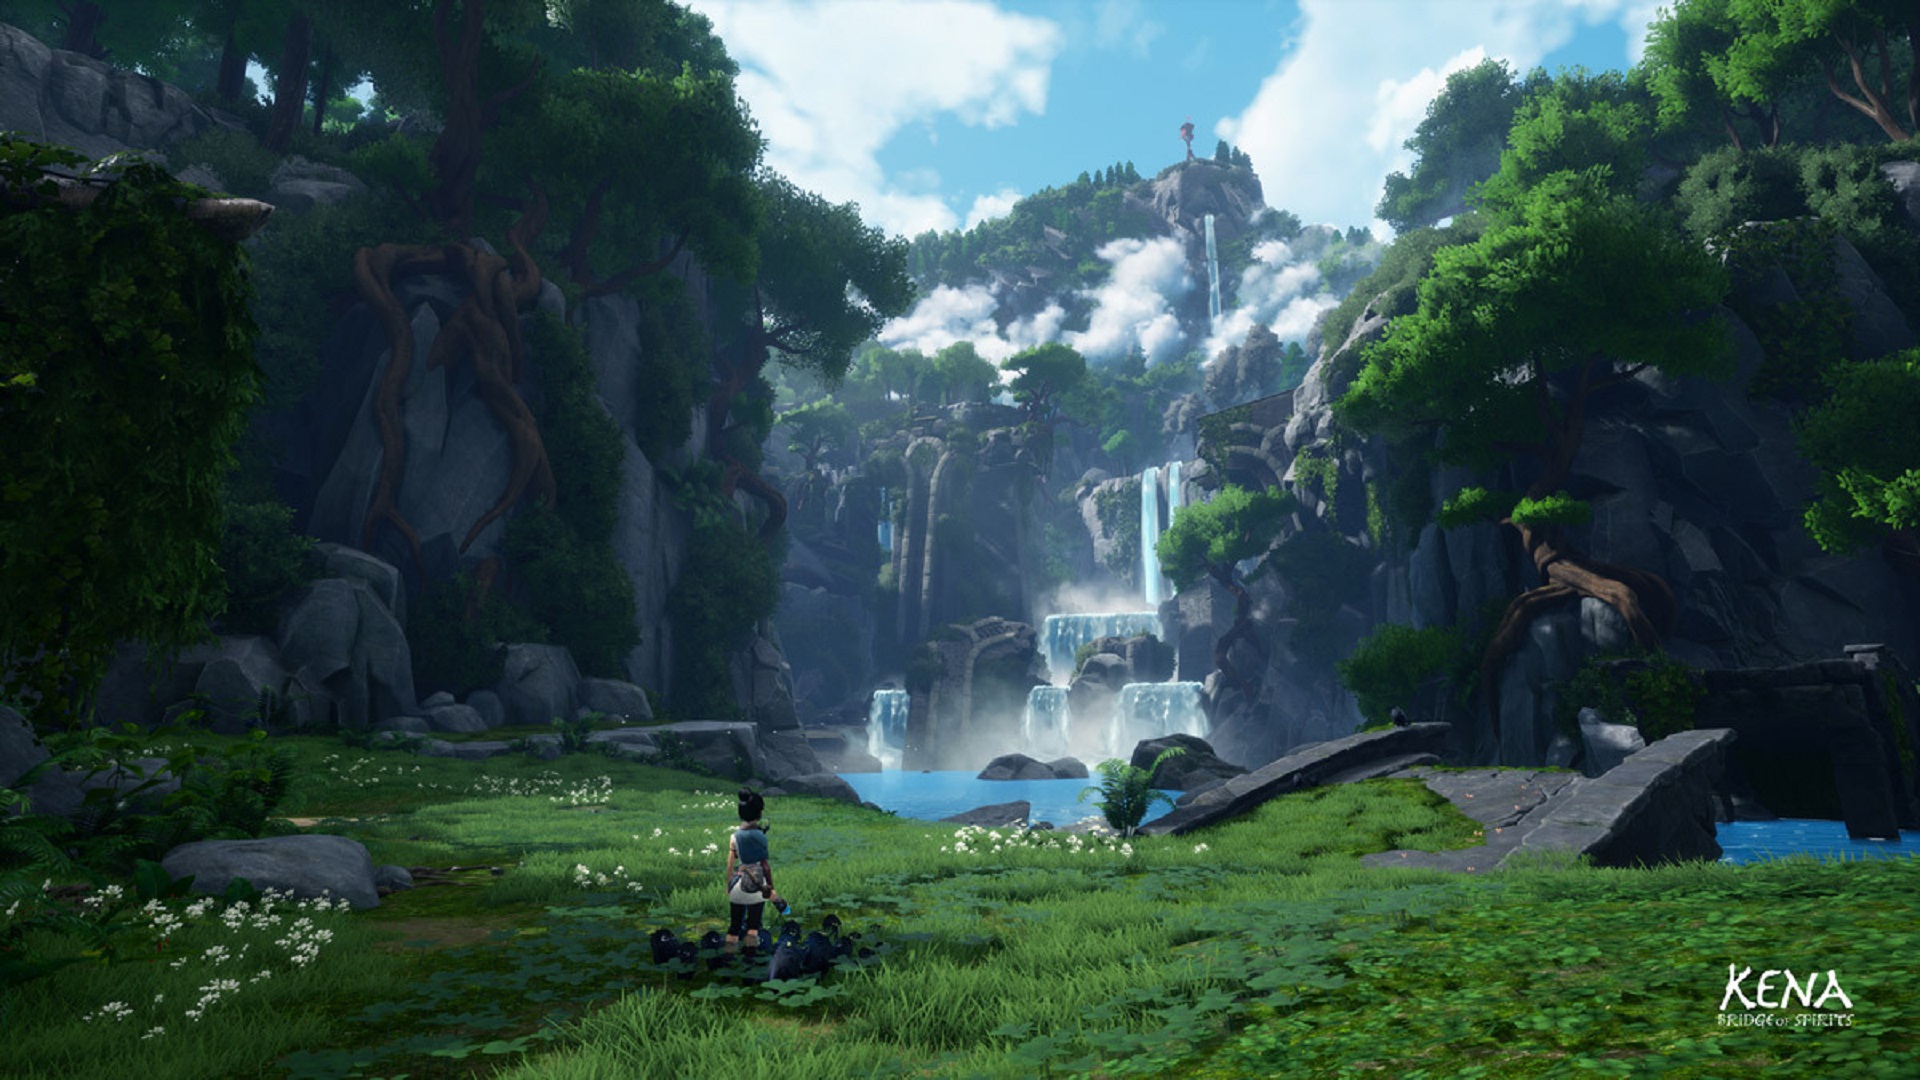 Разработчик Kena рассказал о сохранении одинакового визуального качества во время геймплея и в кат-сценах